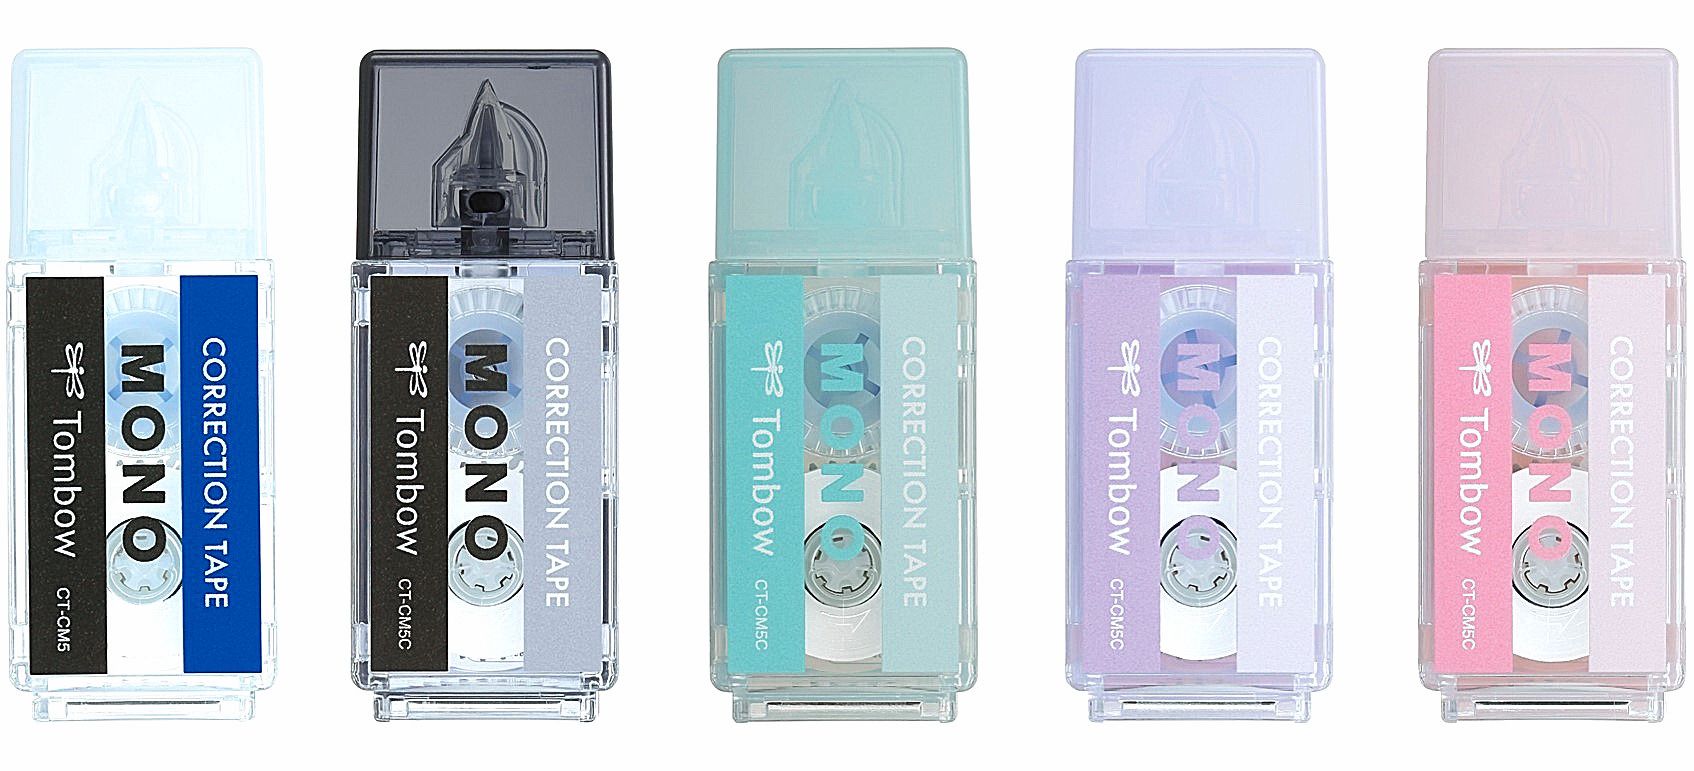 モノ消しデザインの修正テープ「モノポケット」新発売  つかいやすい小型、おさまりよい角型 #Z世代Pick